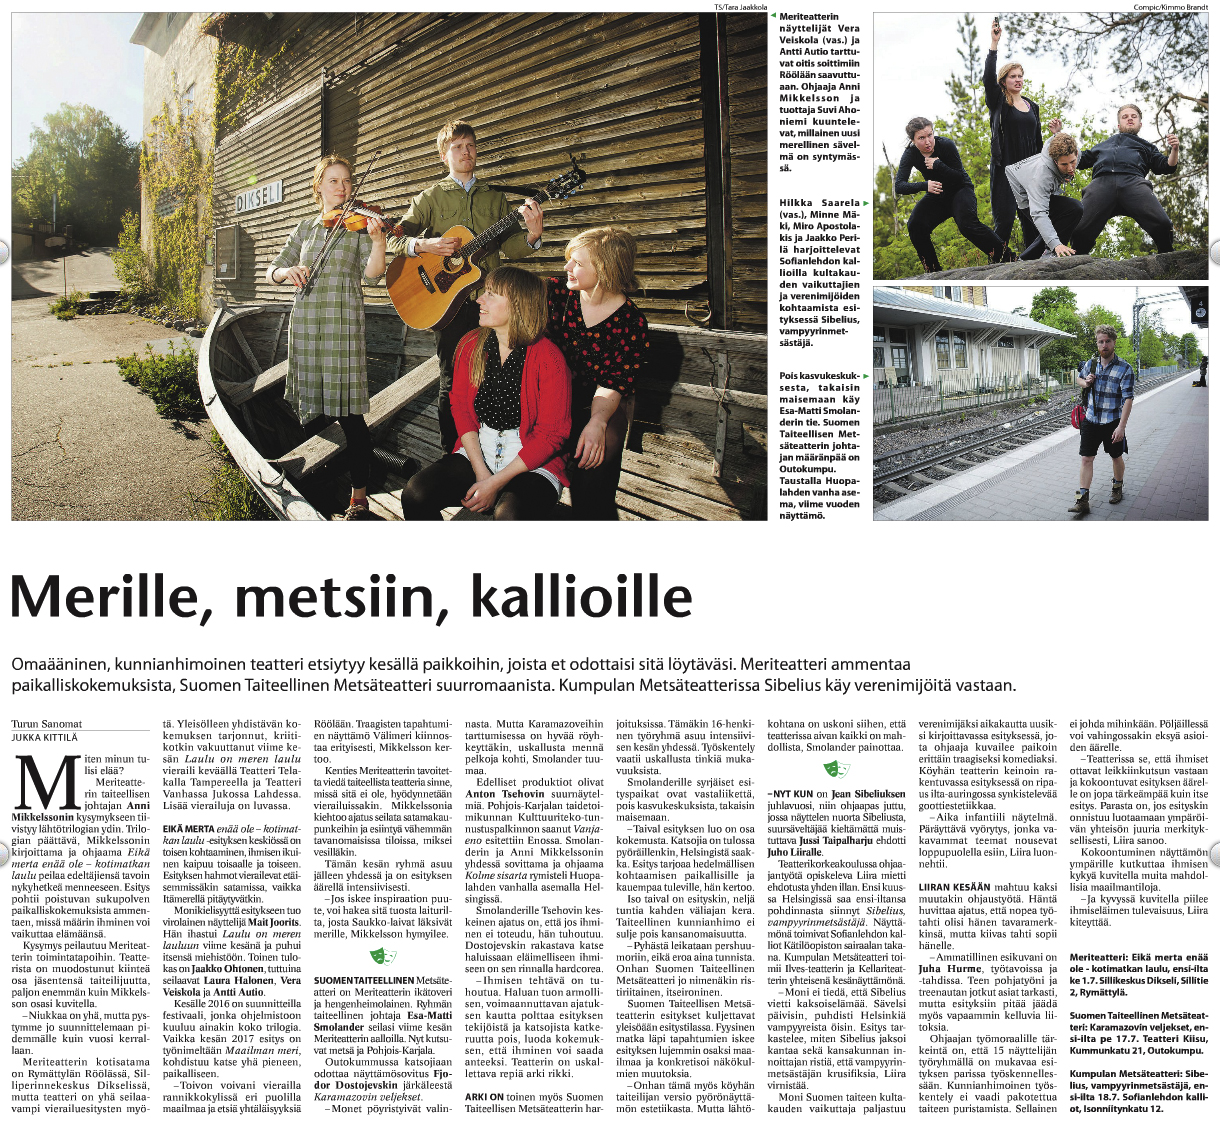 “Merille, metsiin, kalliolle” – Turun Sanomat 7.6.2015